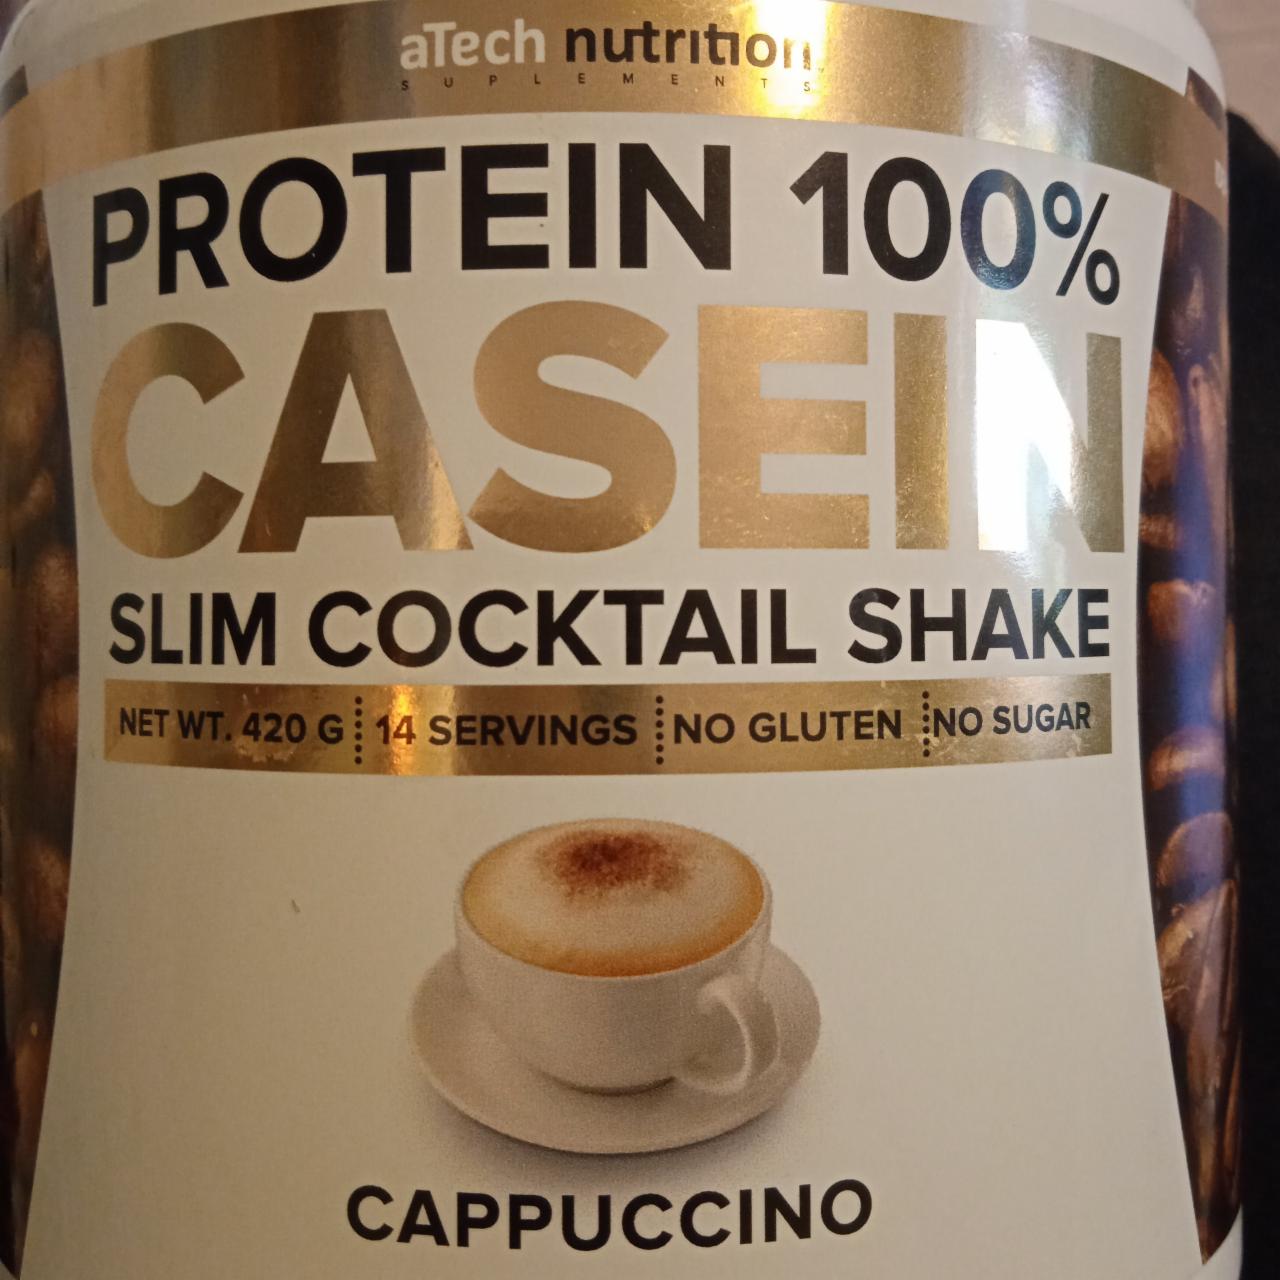 Фото - Сухая порошковая смесь казеин протеин со вкусом капучино Atech nutrition